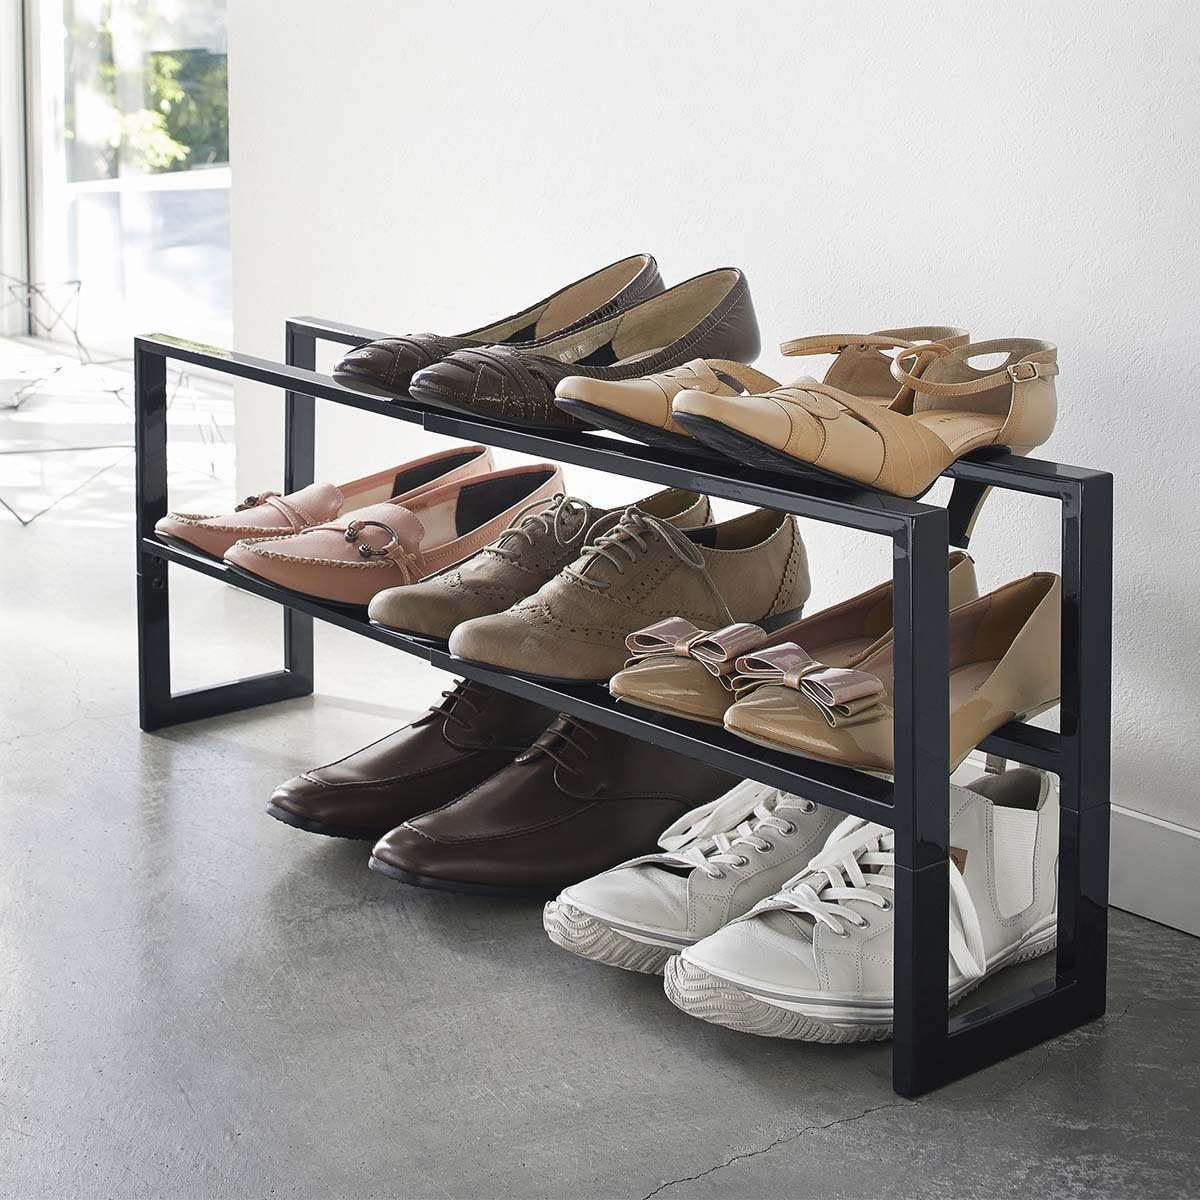 Yamazaki Schuhregal "Line" schmal ausziehbar 38-70cm, Schuhständer, Schuhablage, mit 2 Ablagen, für 6-9 Paar, minimalistisch, aus Metall